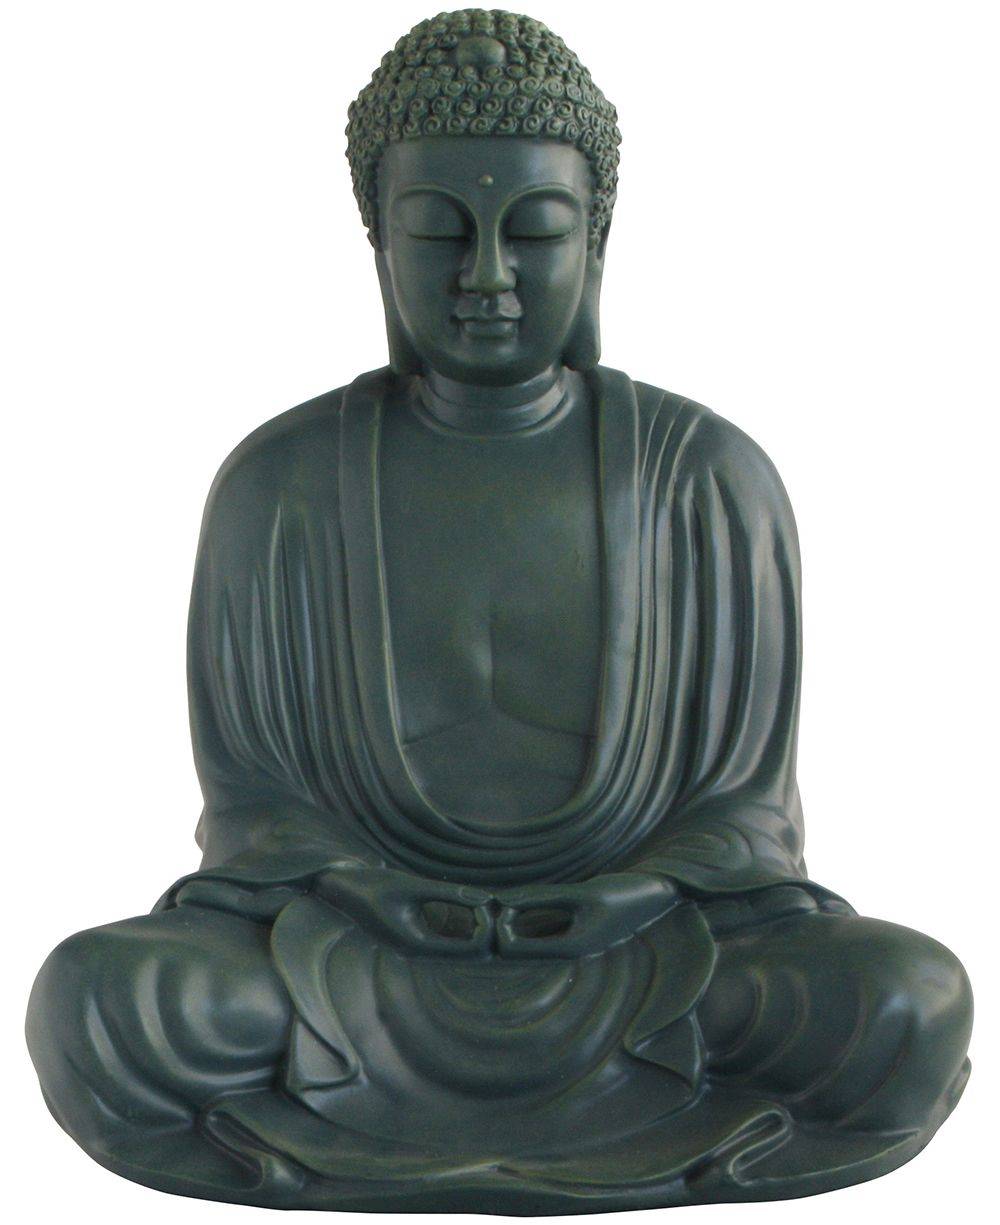 Namaste Temple Buddha Buddha